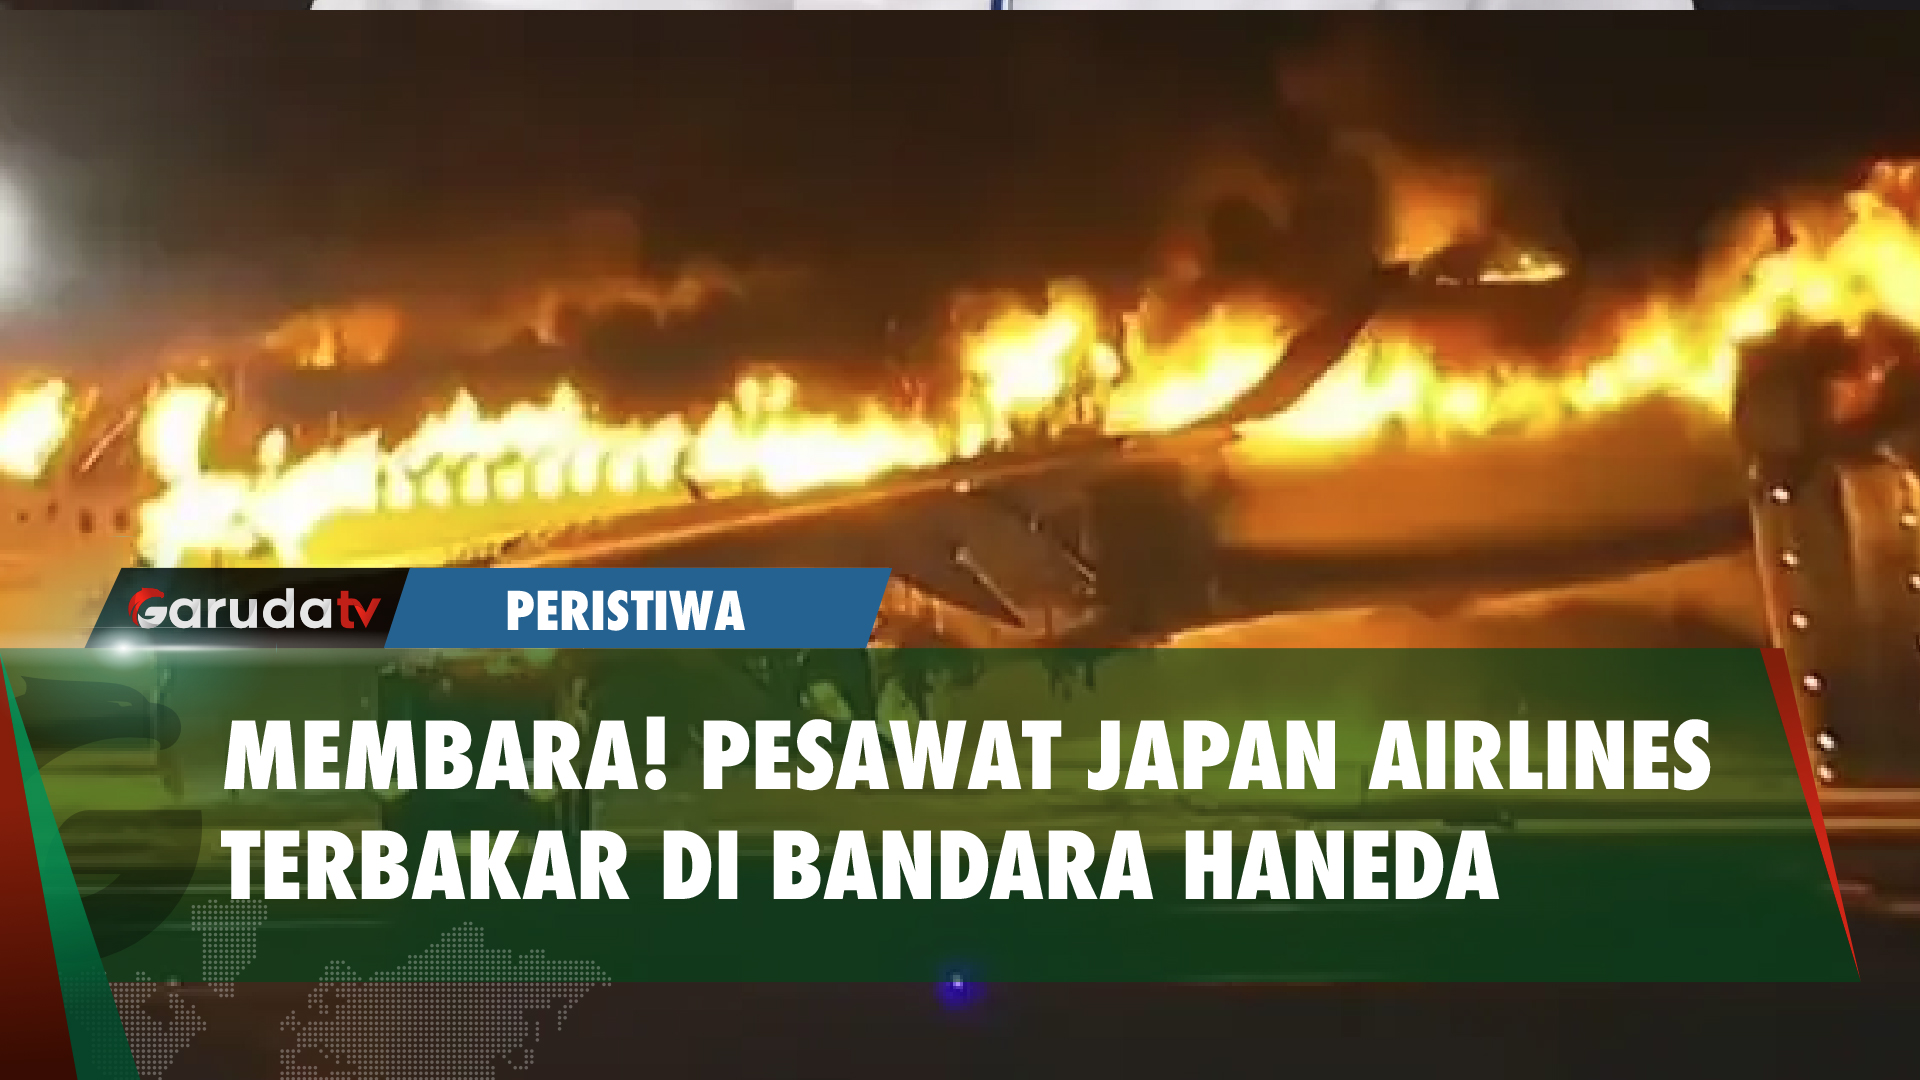 Diduga Tabrakan, Pesawat Japan Airlines Terbakar di Bandara Haneda